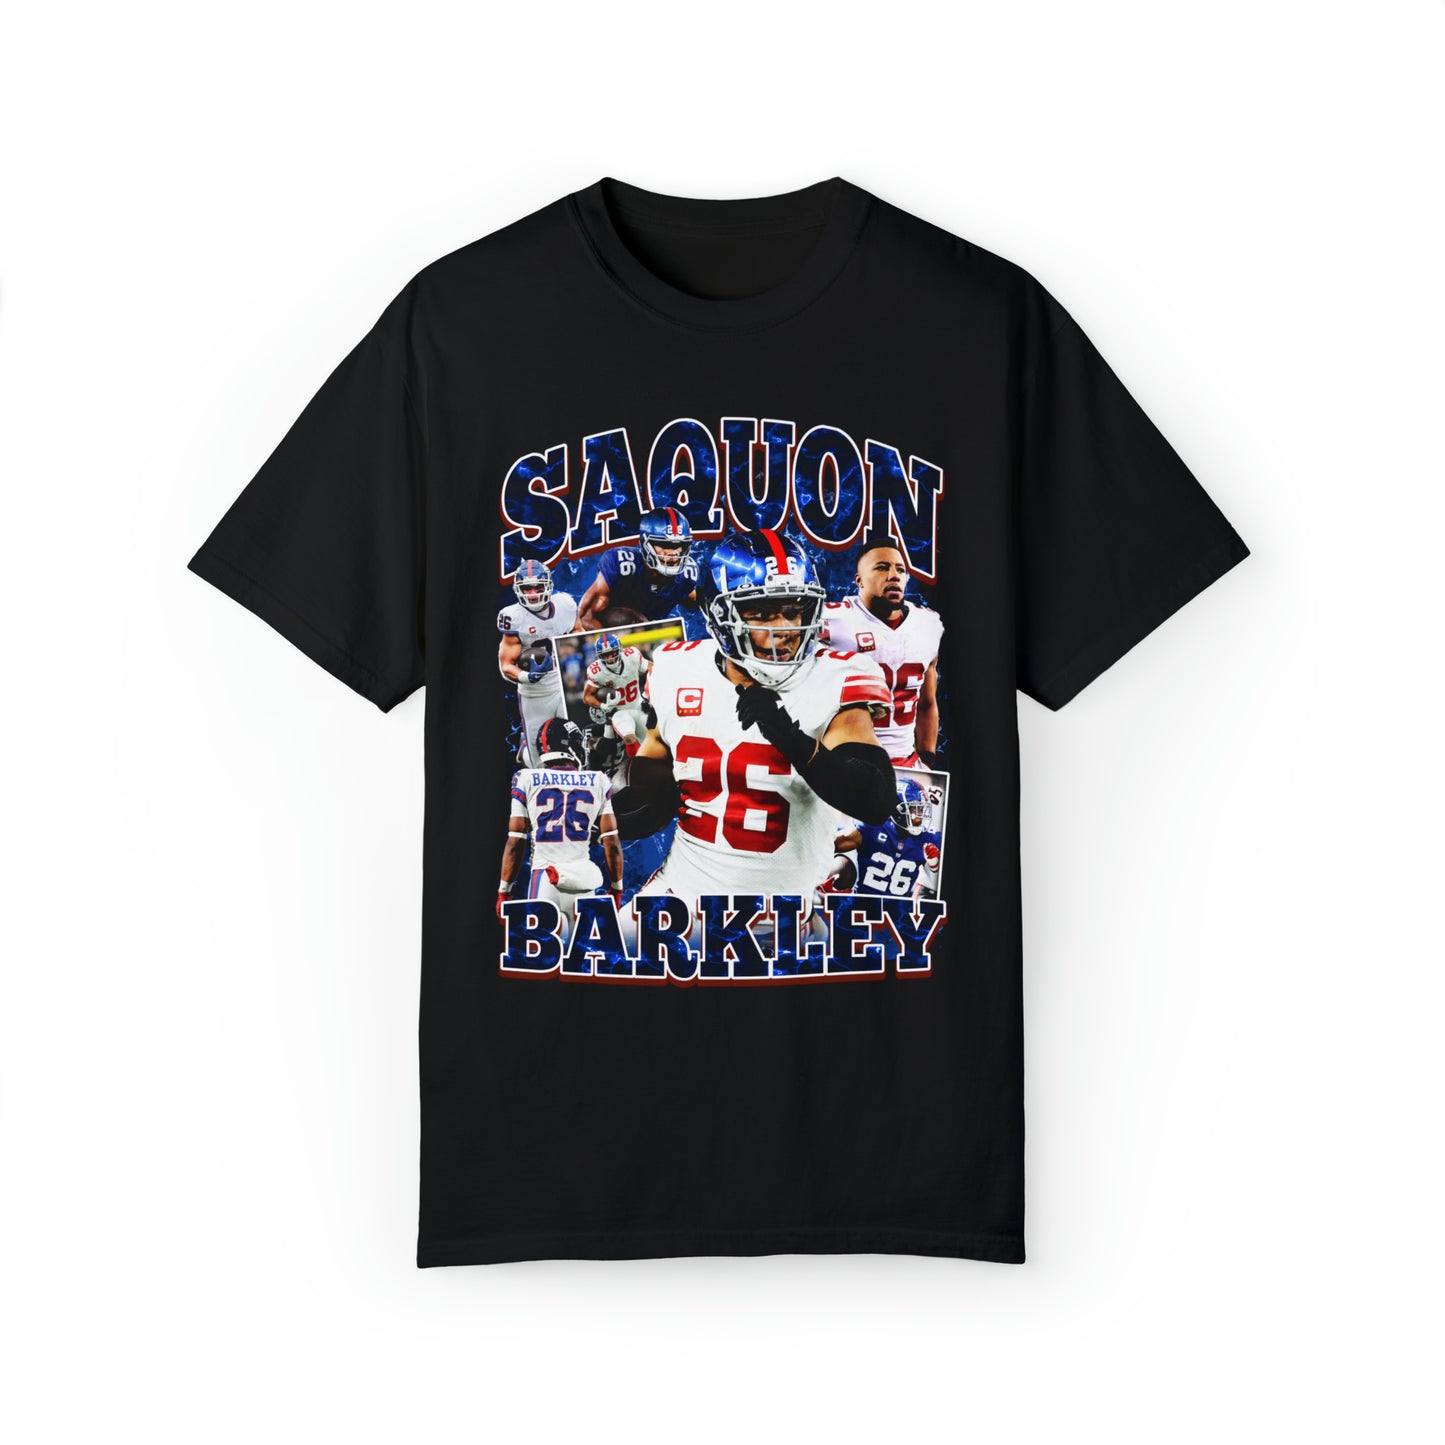 WIY x Barkley Vintage T-Shirt